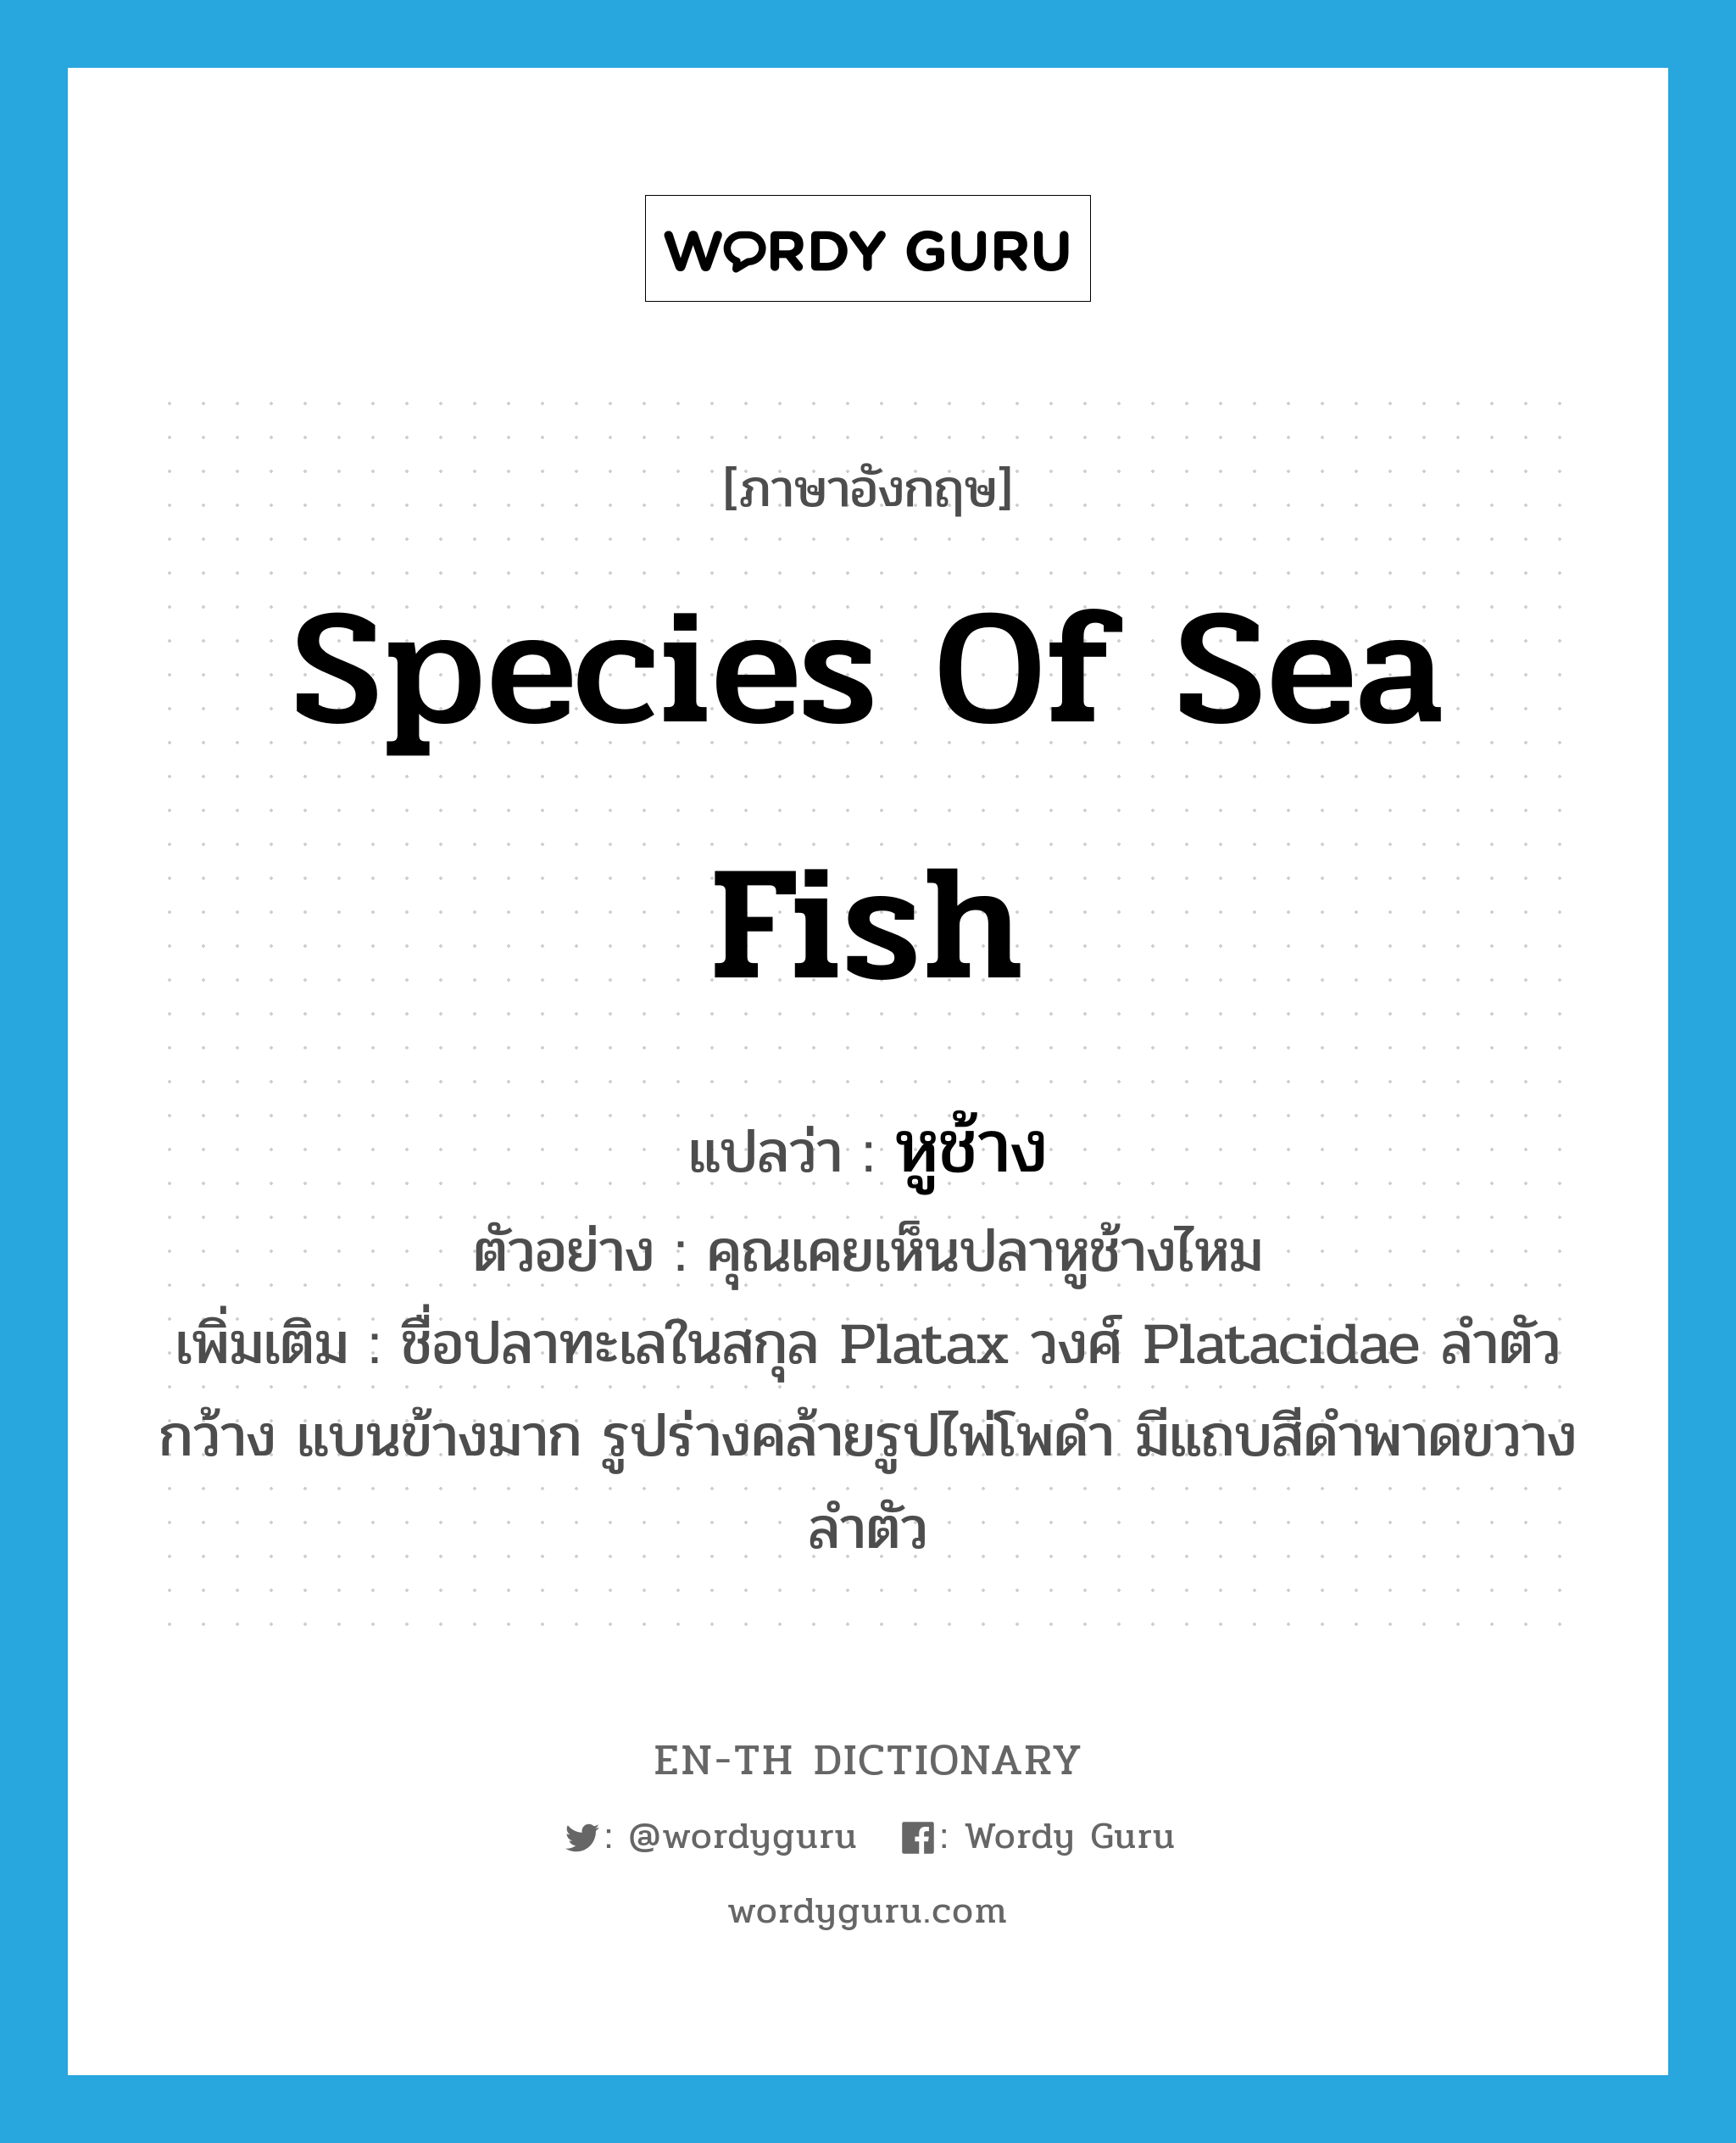 species of sea fish แปลว่า?, คำศัพท์ภาษาอังกฤษ species of sea fish แปลว่า หูช้าง ประเภท N ตัวอย่าง คุณเคยเห็นปลาหูช้างไหม เพิ่มเติม ชื่อปลาทะเลในสกุล Platax วงศ์ Platacidae ลำตัวกว้าง แบนข้างมาก รูปร่างคล้ายรูปไพ่โพดำ มีแถบสีดำพาดขวางลำตัว หมวด N